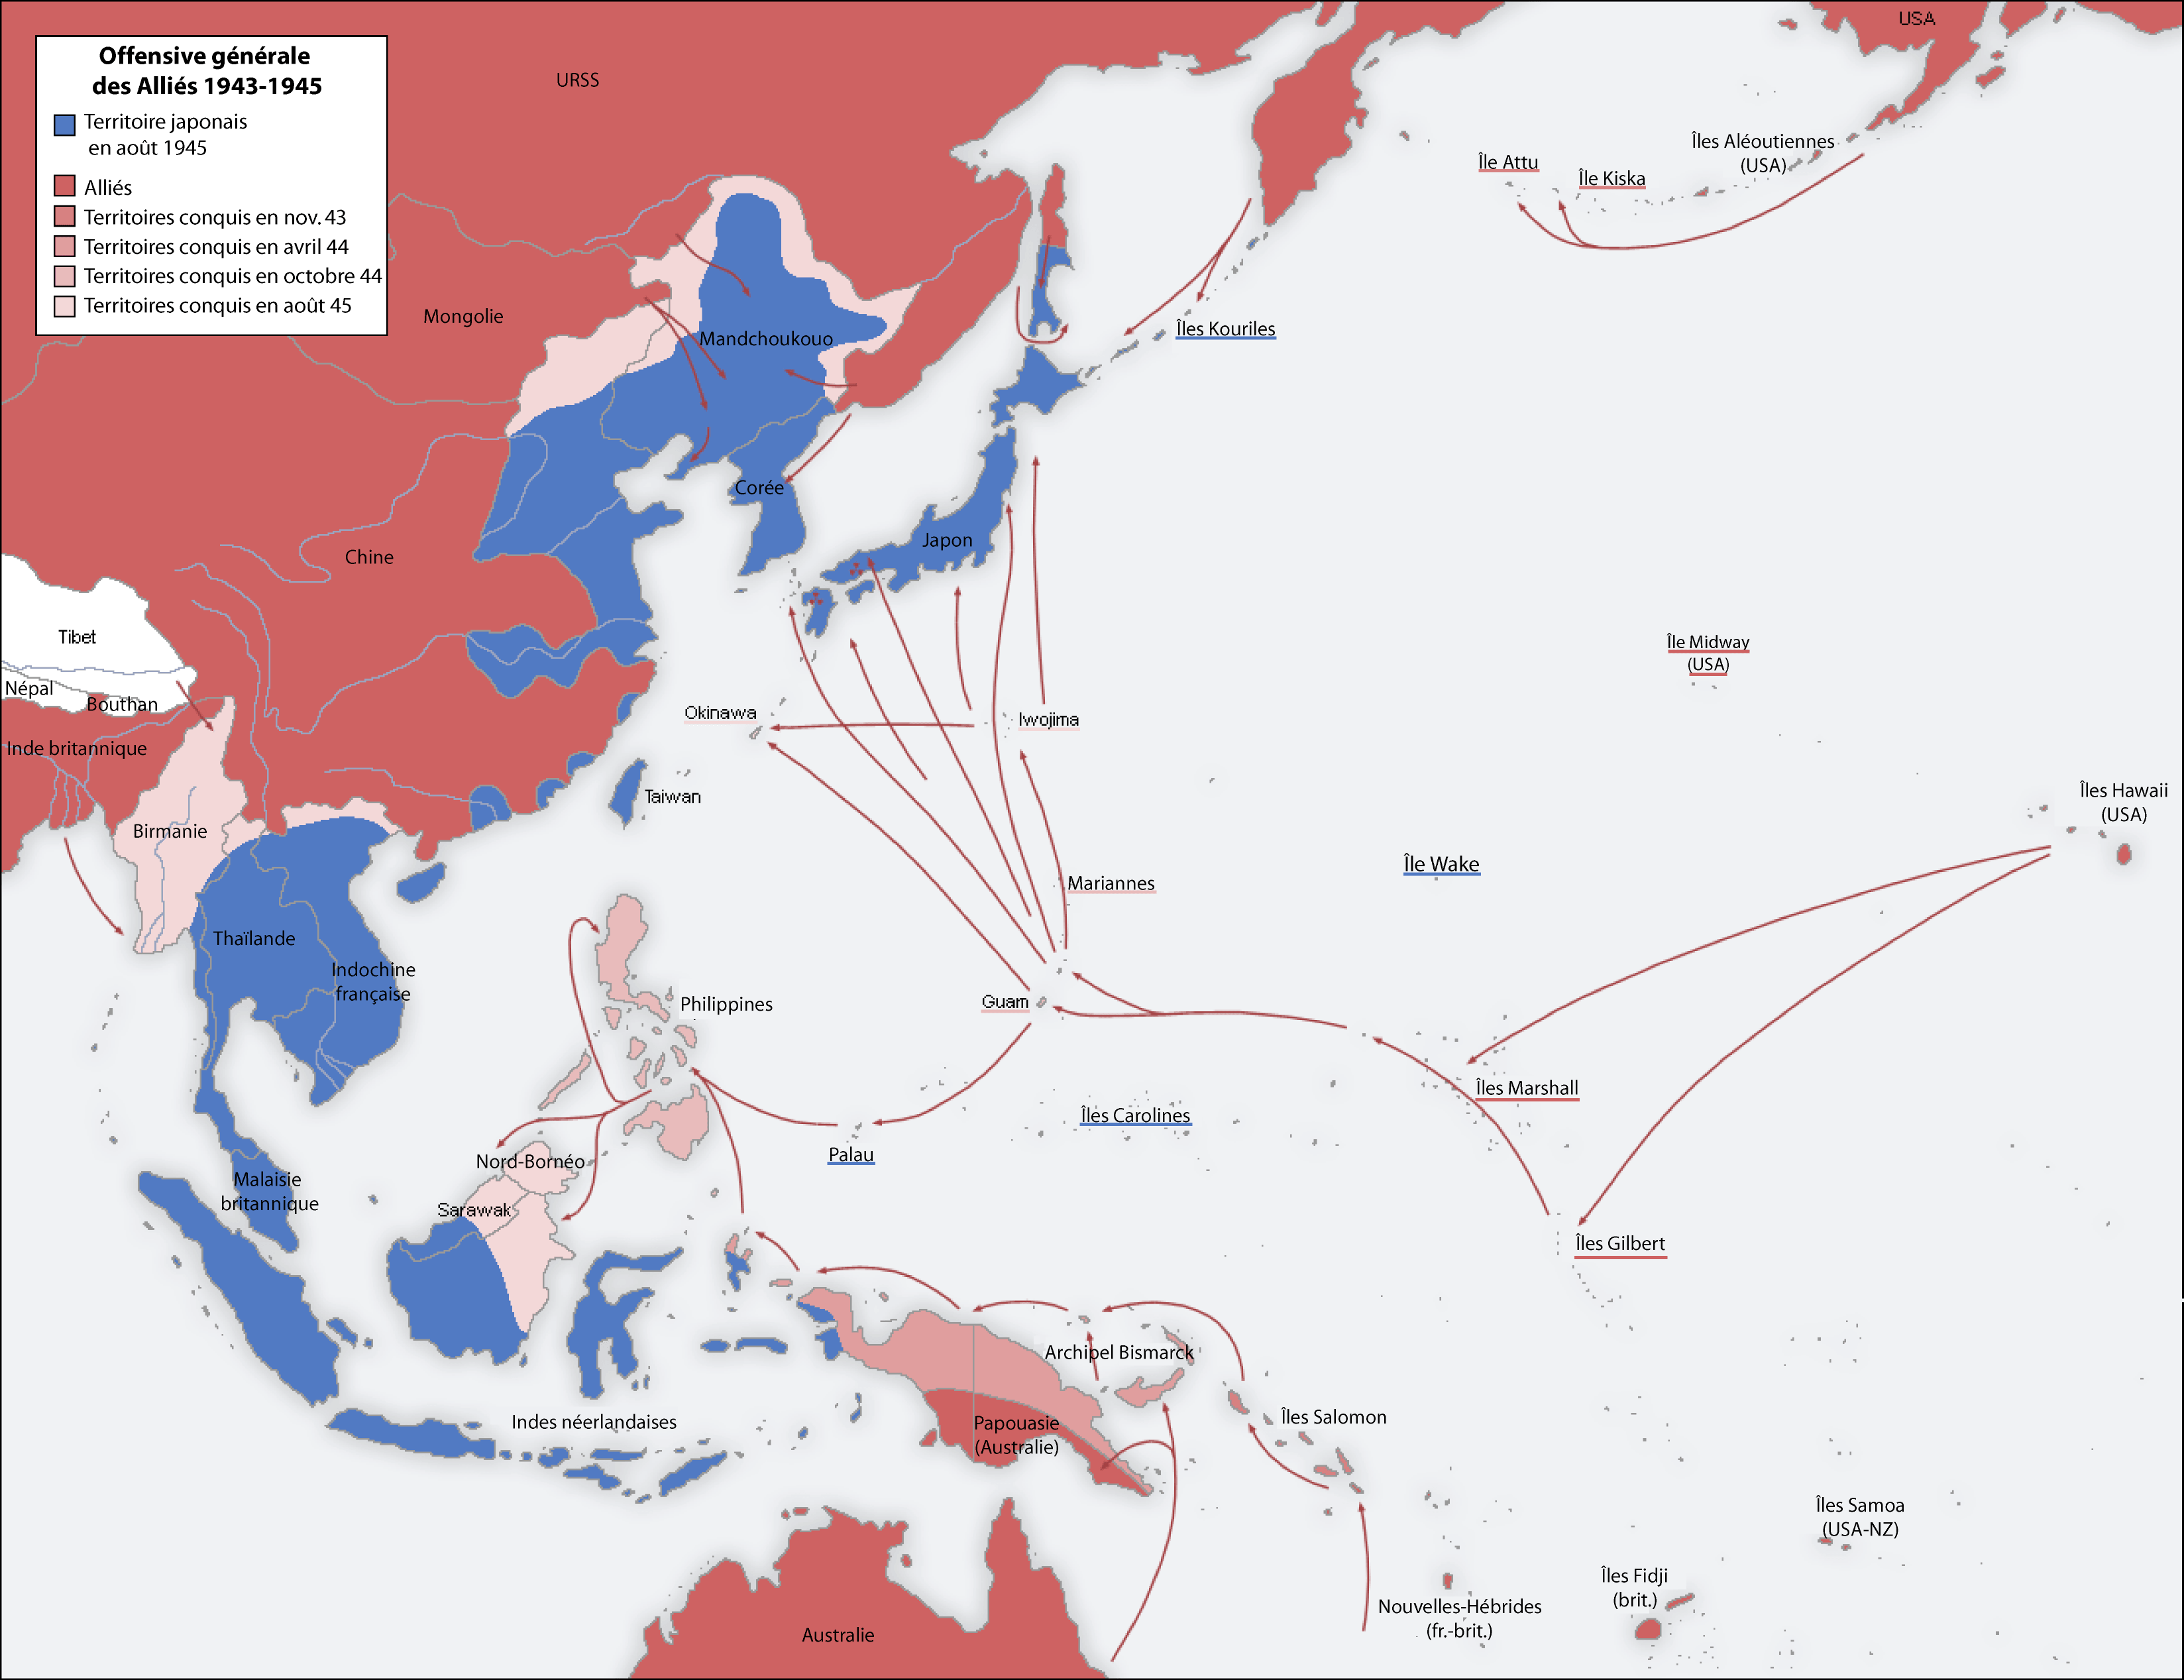 zweite weltkrieg asien 1943 1945 karte